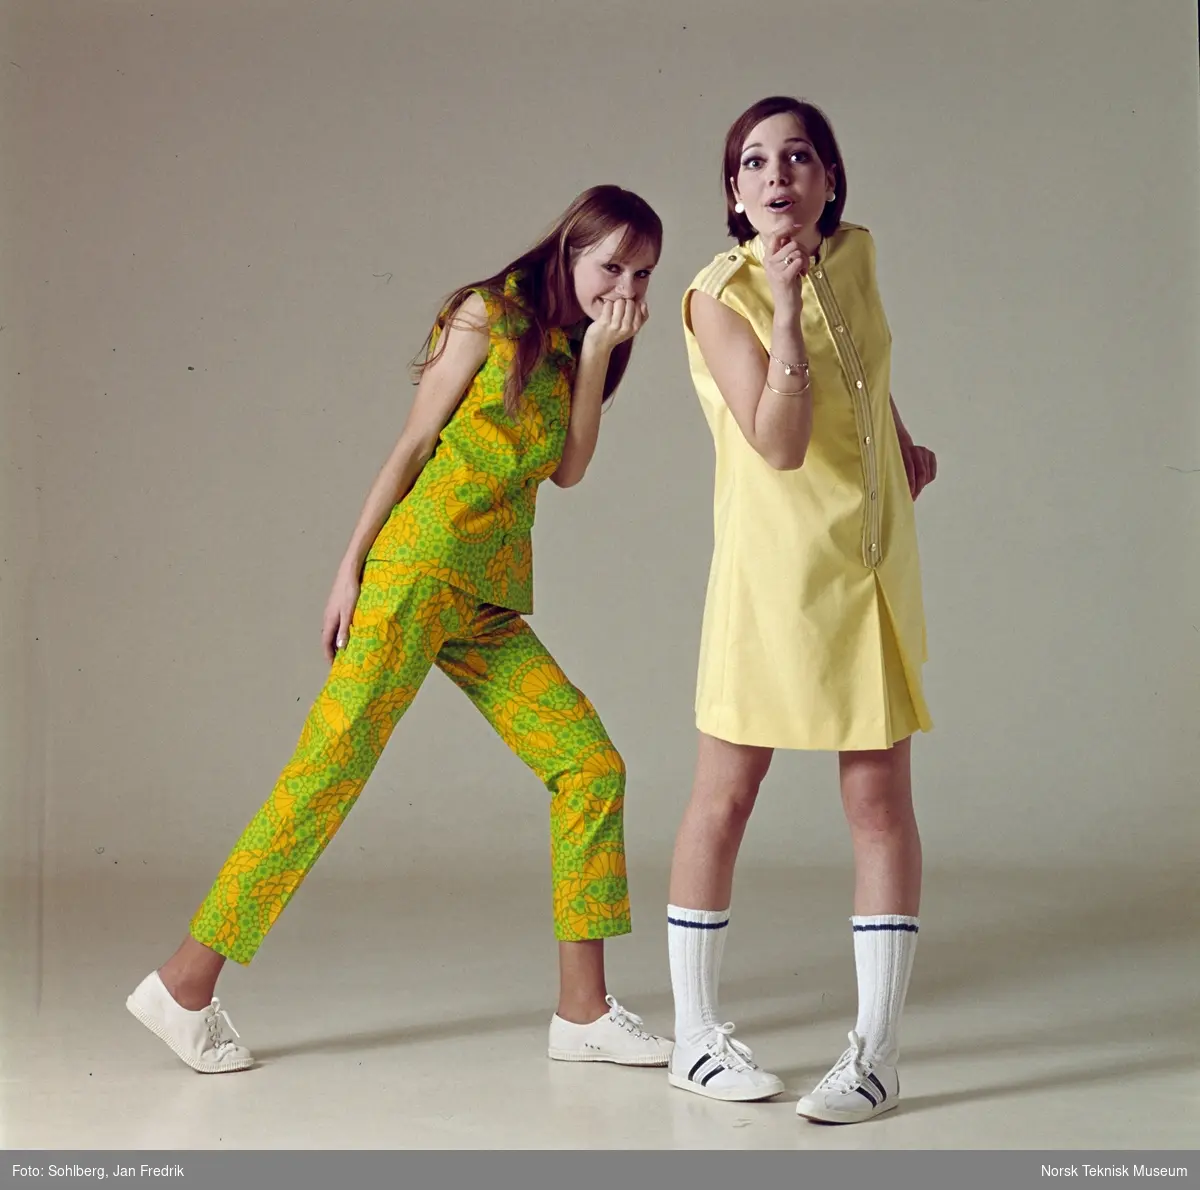 Tidlig norsk motefotografi. To unge, kvinnelige modeller viser sommermote fra 1960-tallet. Den ene har blomstermønstret bukse og topp i grønt og gult, mens den andre har kort gulmønstret kjole.